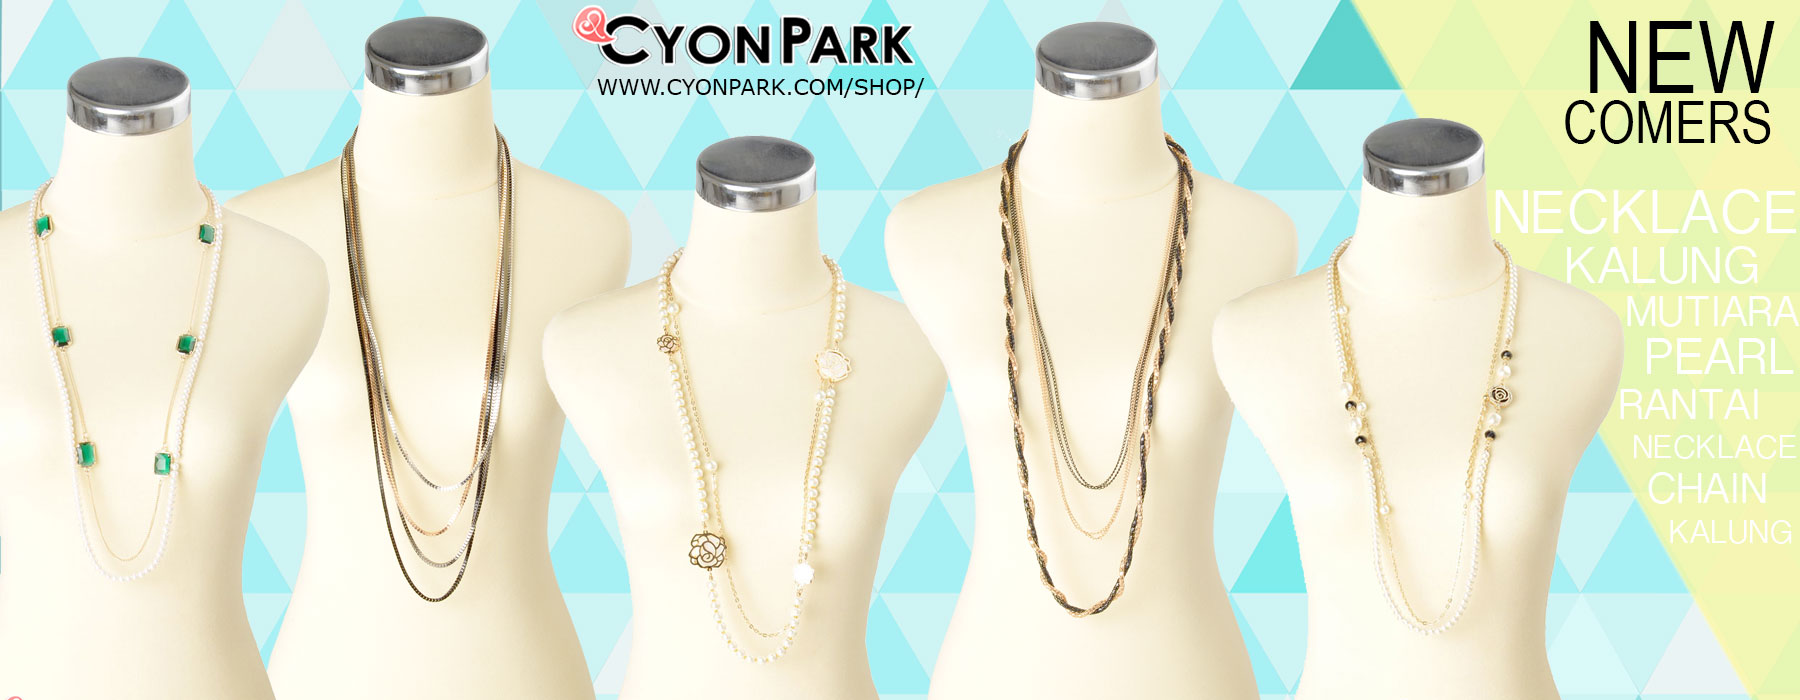 kalung-rantai-kalung-mutiara-necklace-pearl-model-kalung-terbaru-2014-cyonpark.jpg